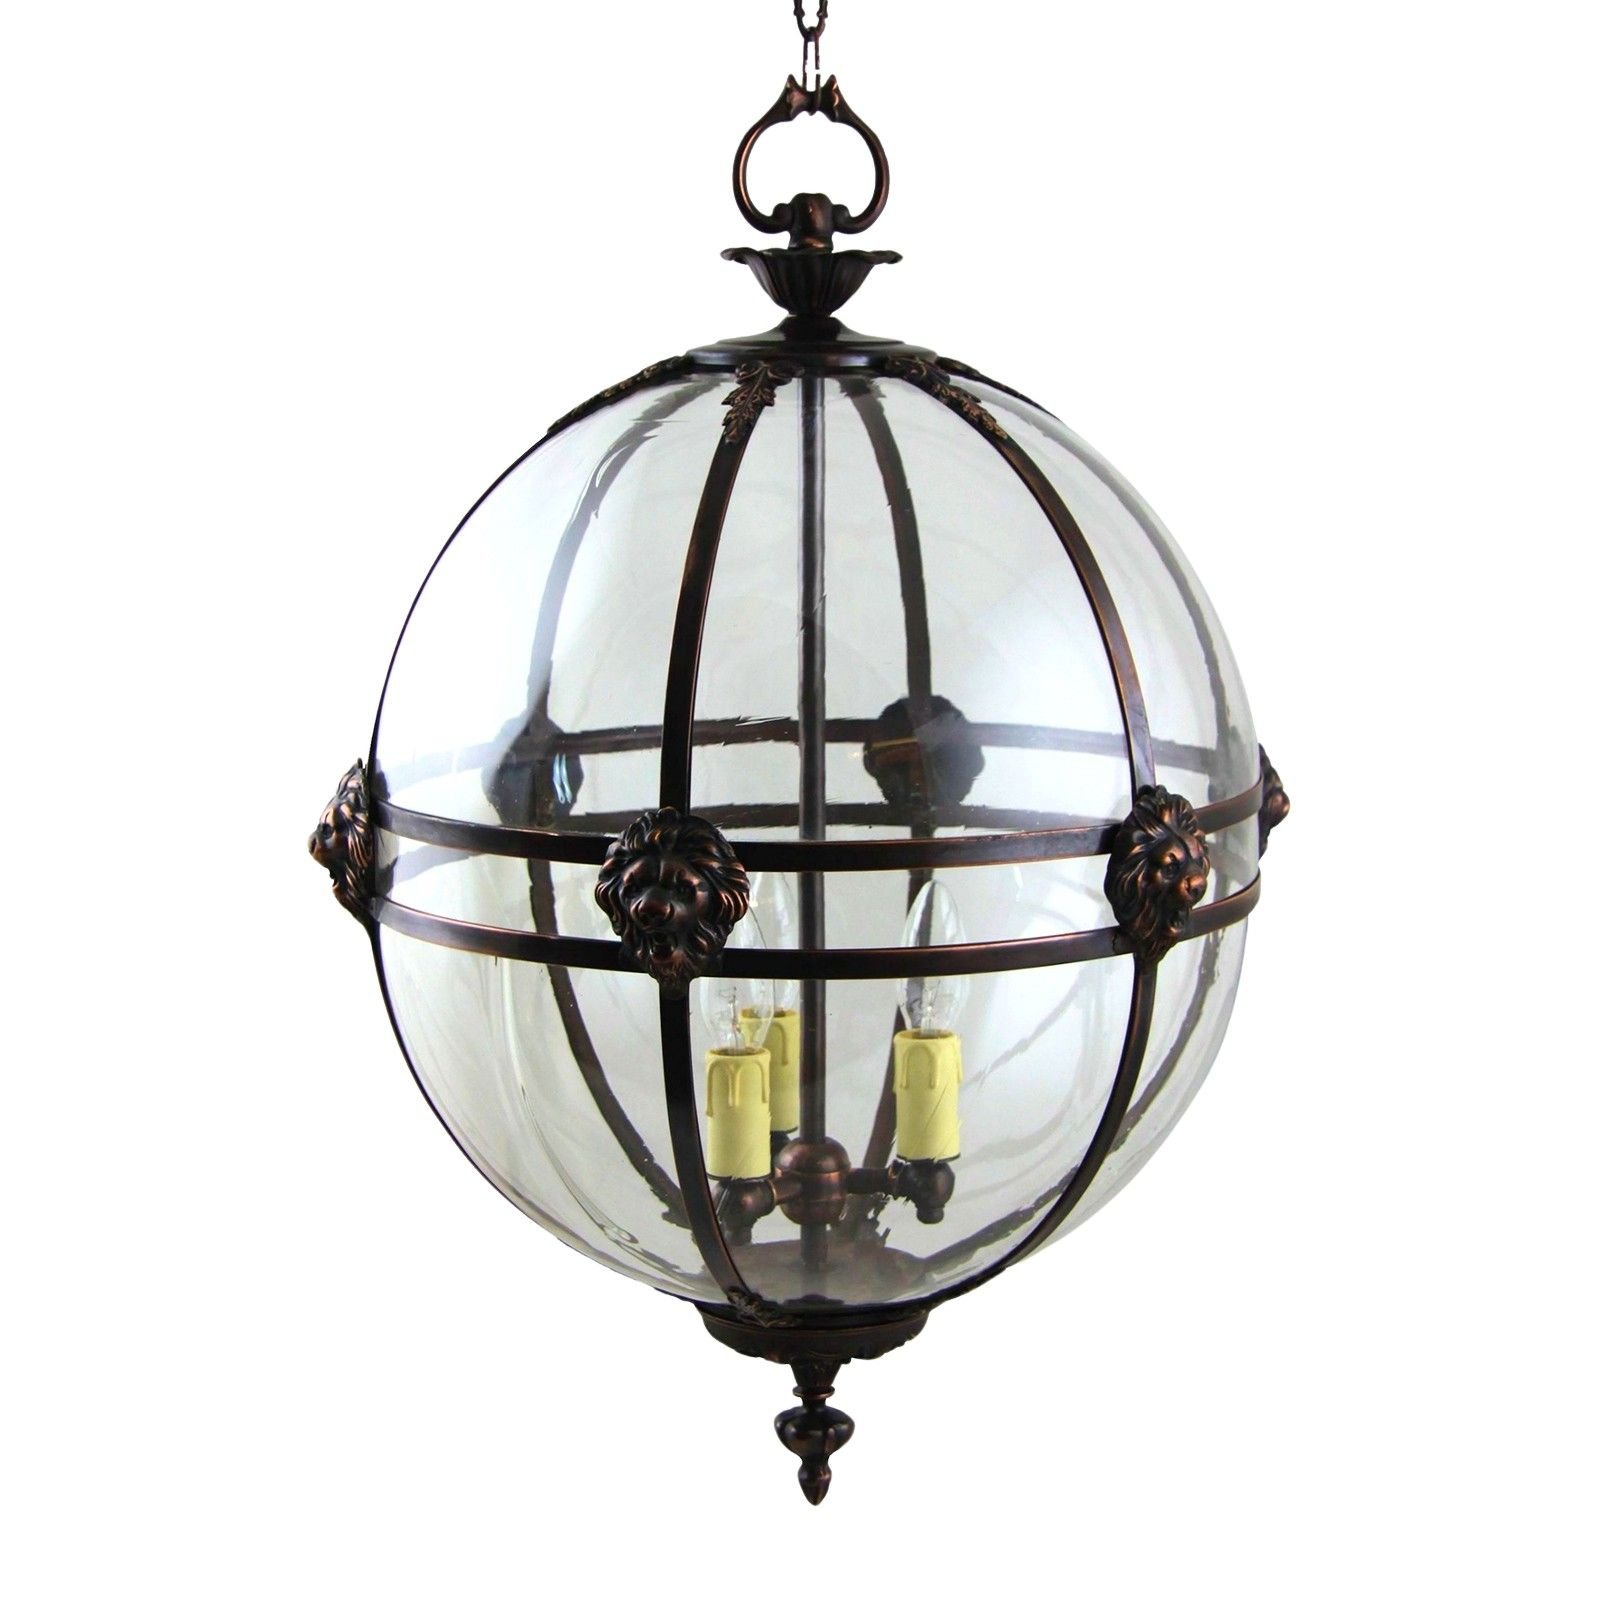 Victorian globe lantern with lion detail